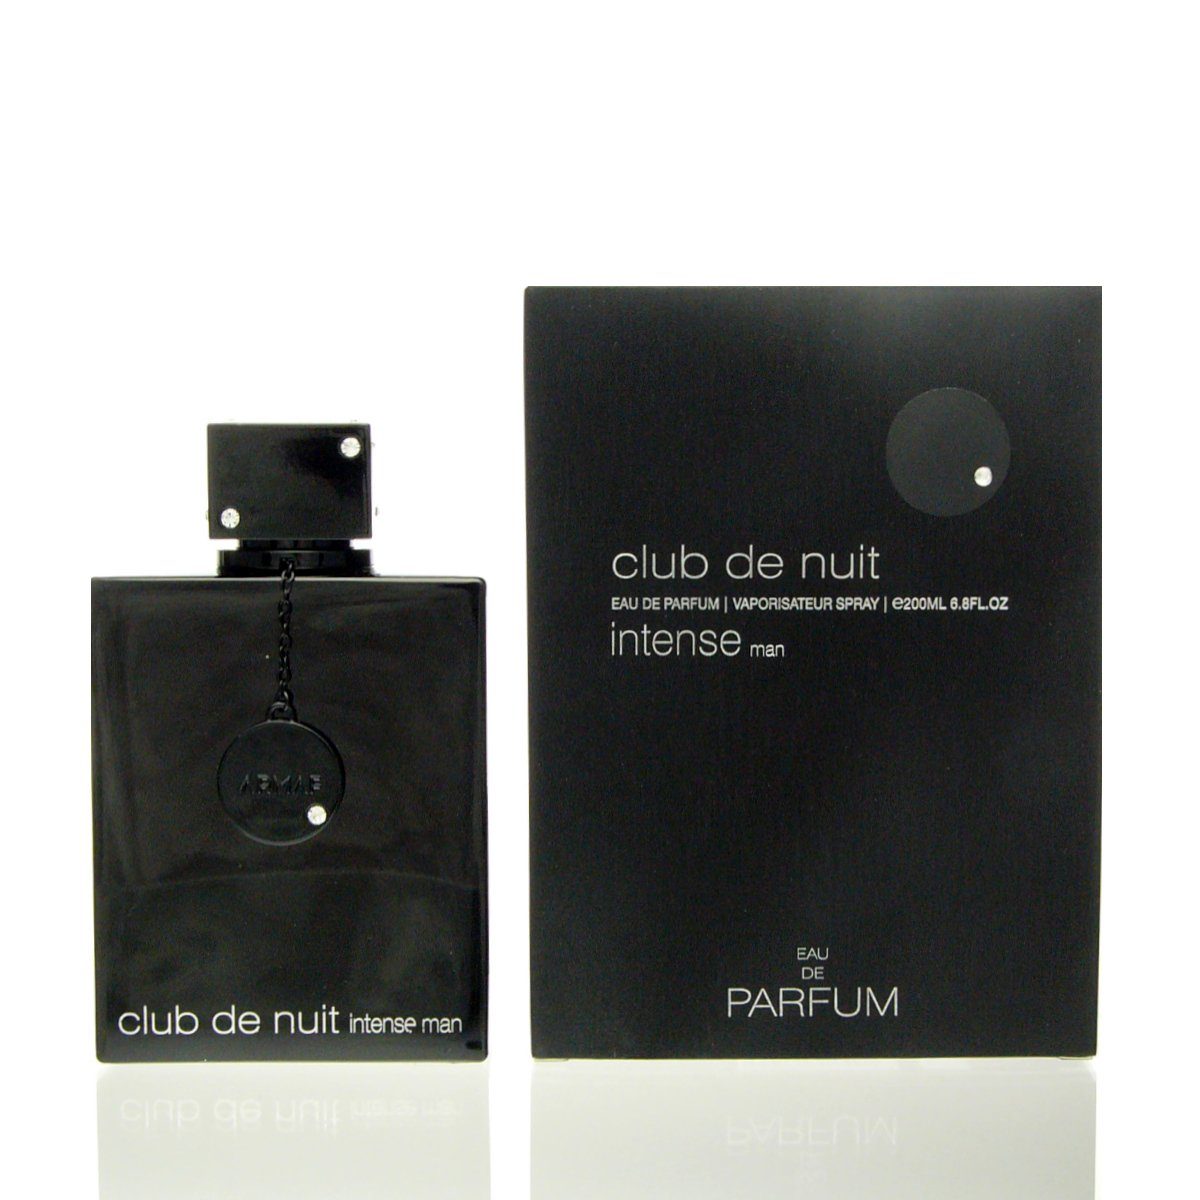 Armaf 200 armaf Club Parfum Nuit Eau Man de Eau de Intense Parfum de ml